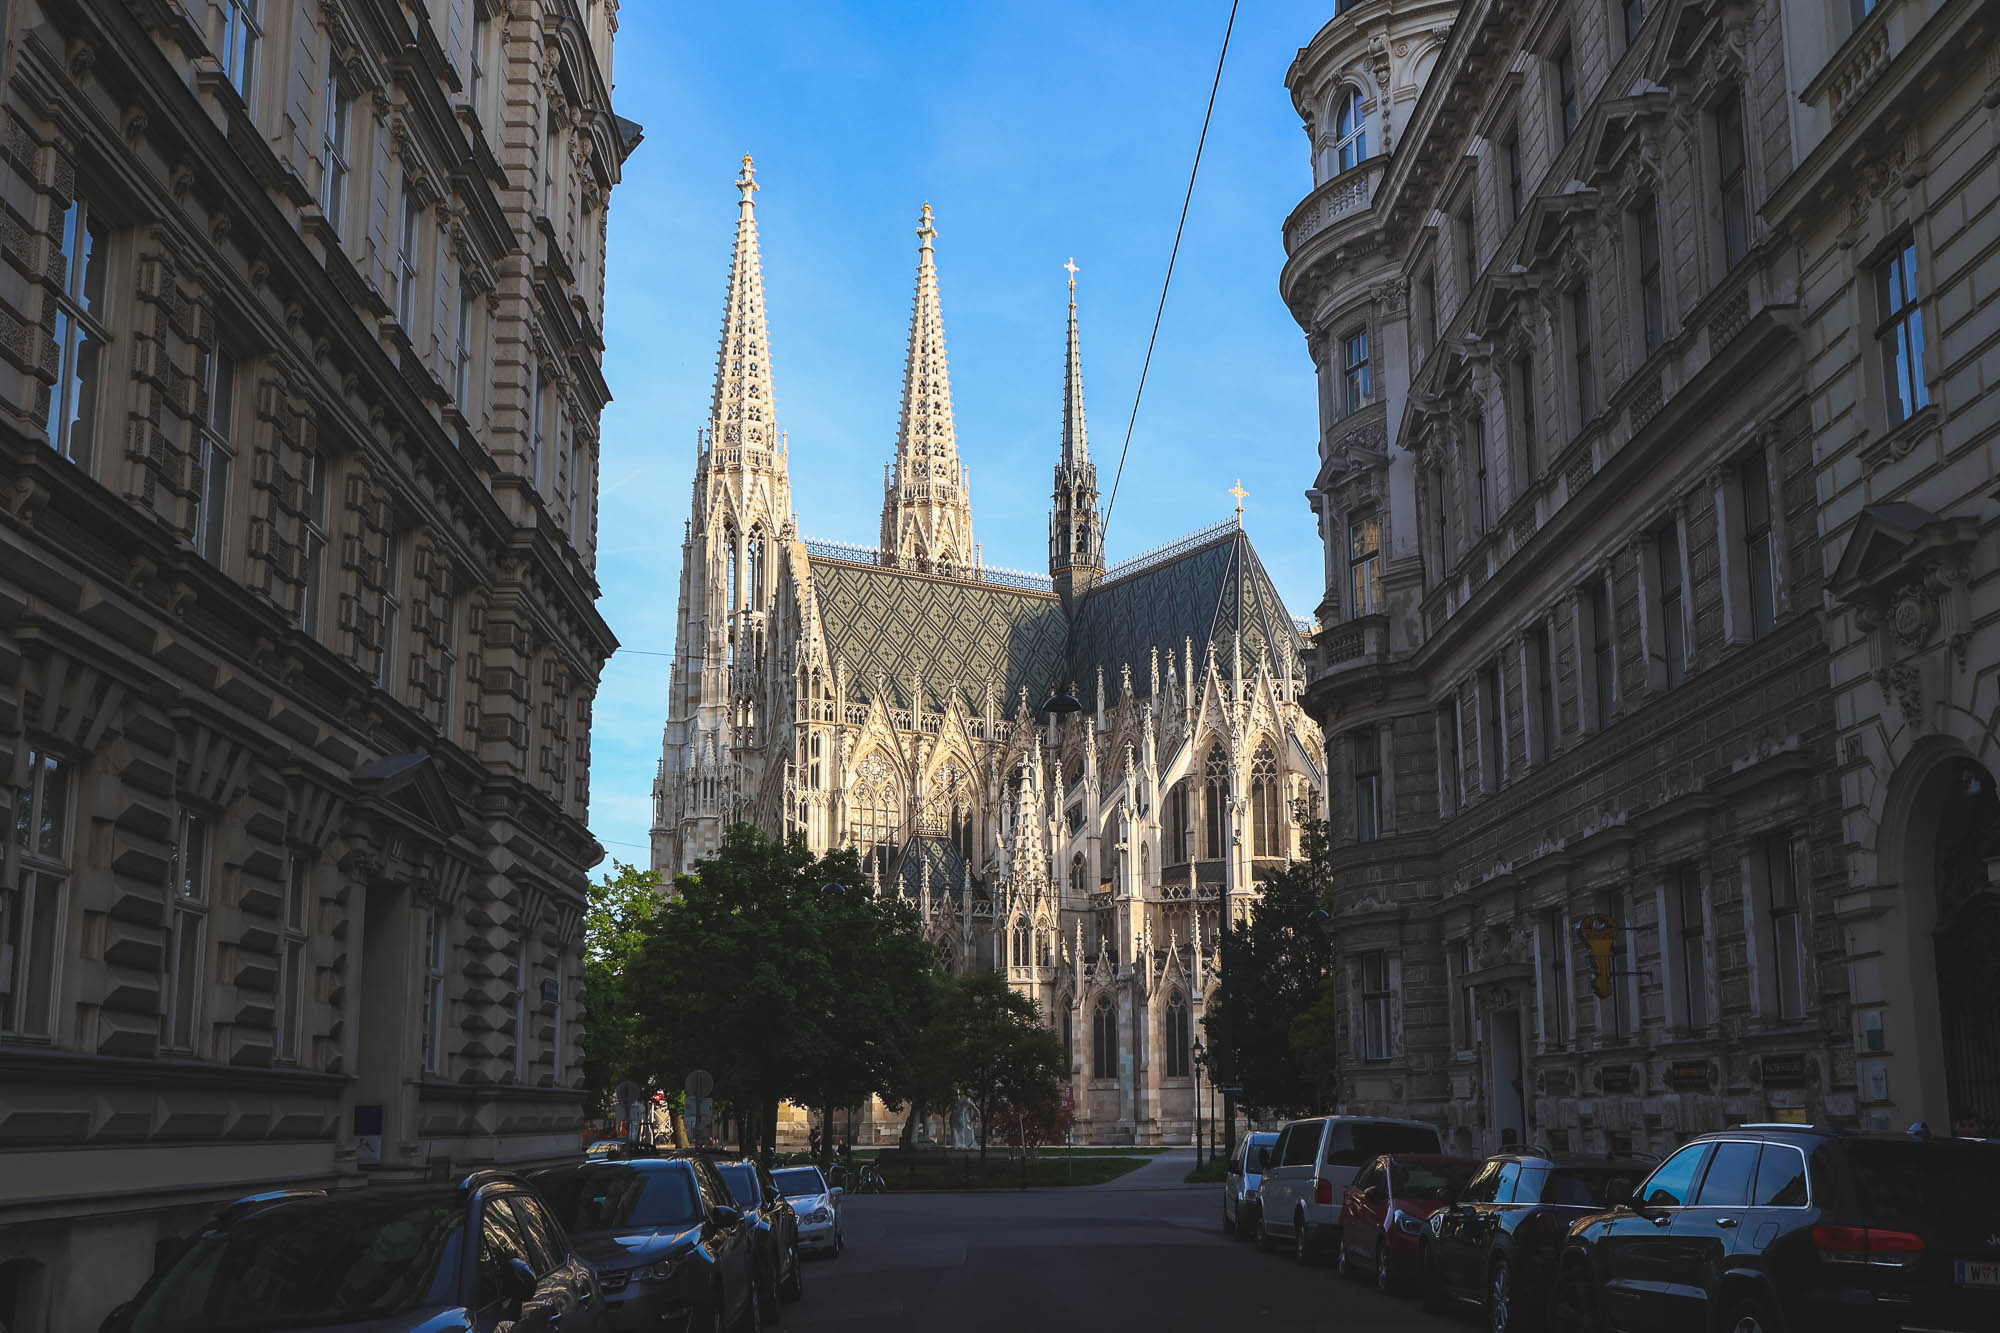 Votivkirche is the crown jewel of Alsergrund, Vienna